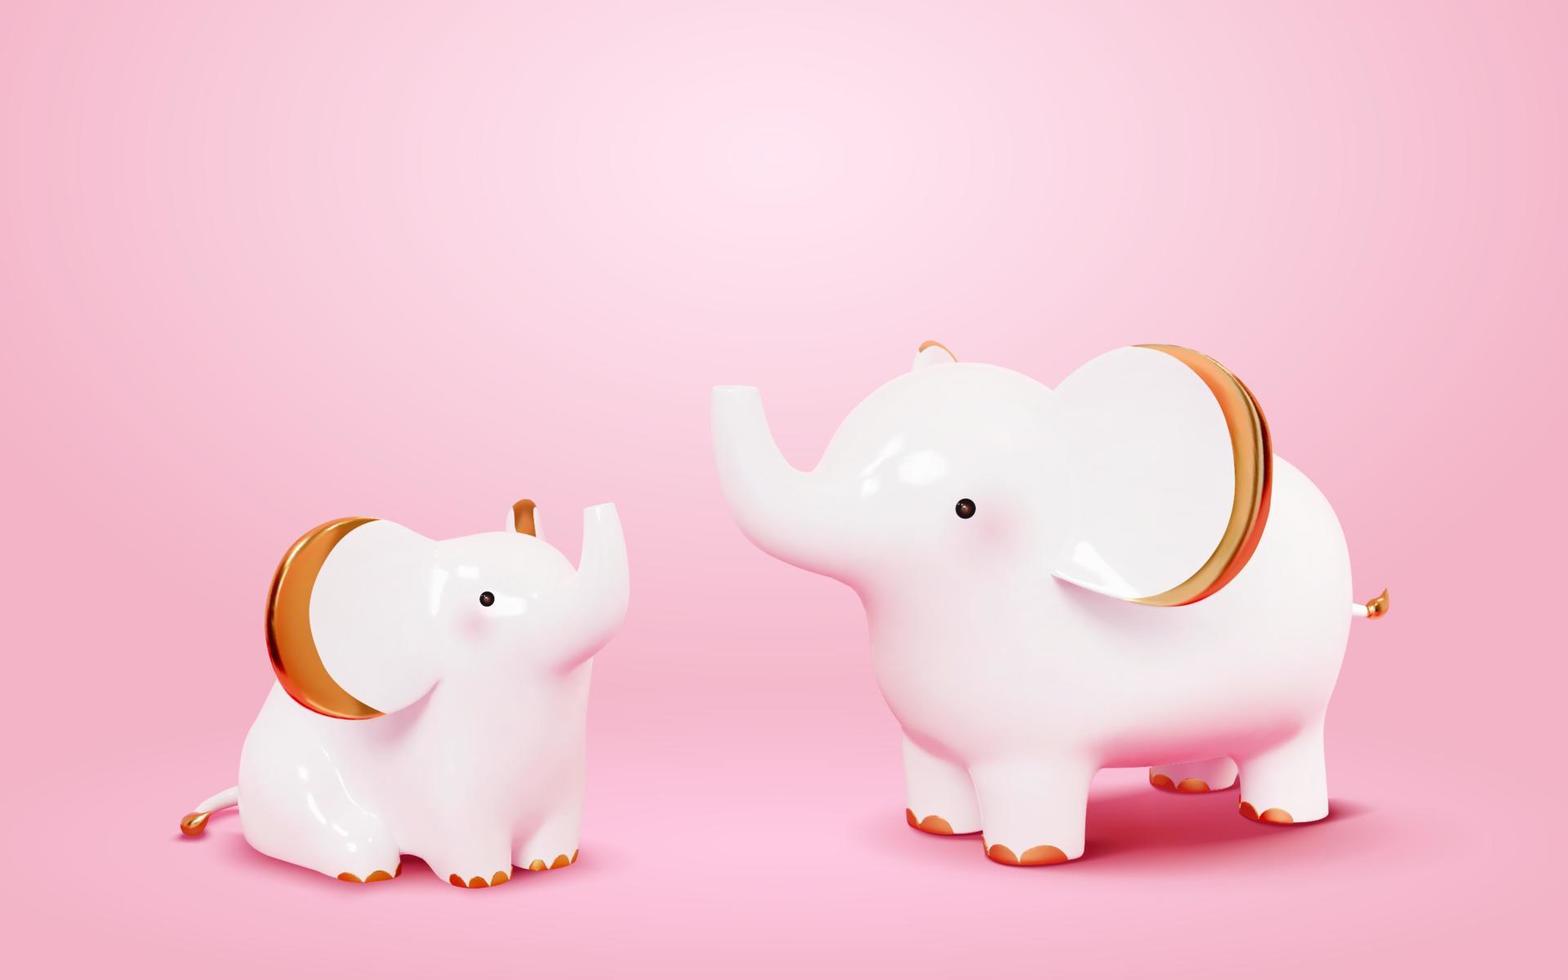 süße Elefantenfiguren. 3D-Illustration von zwei weißen Elefanten, die ihre Rüssel mit goldenen Ohren, Pfoten und Schwänzen heben. Dekorationen aus Porzellan vektor